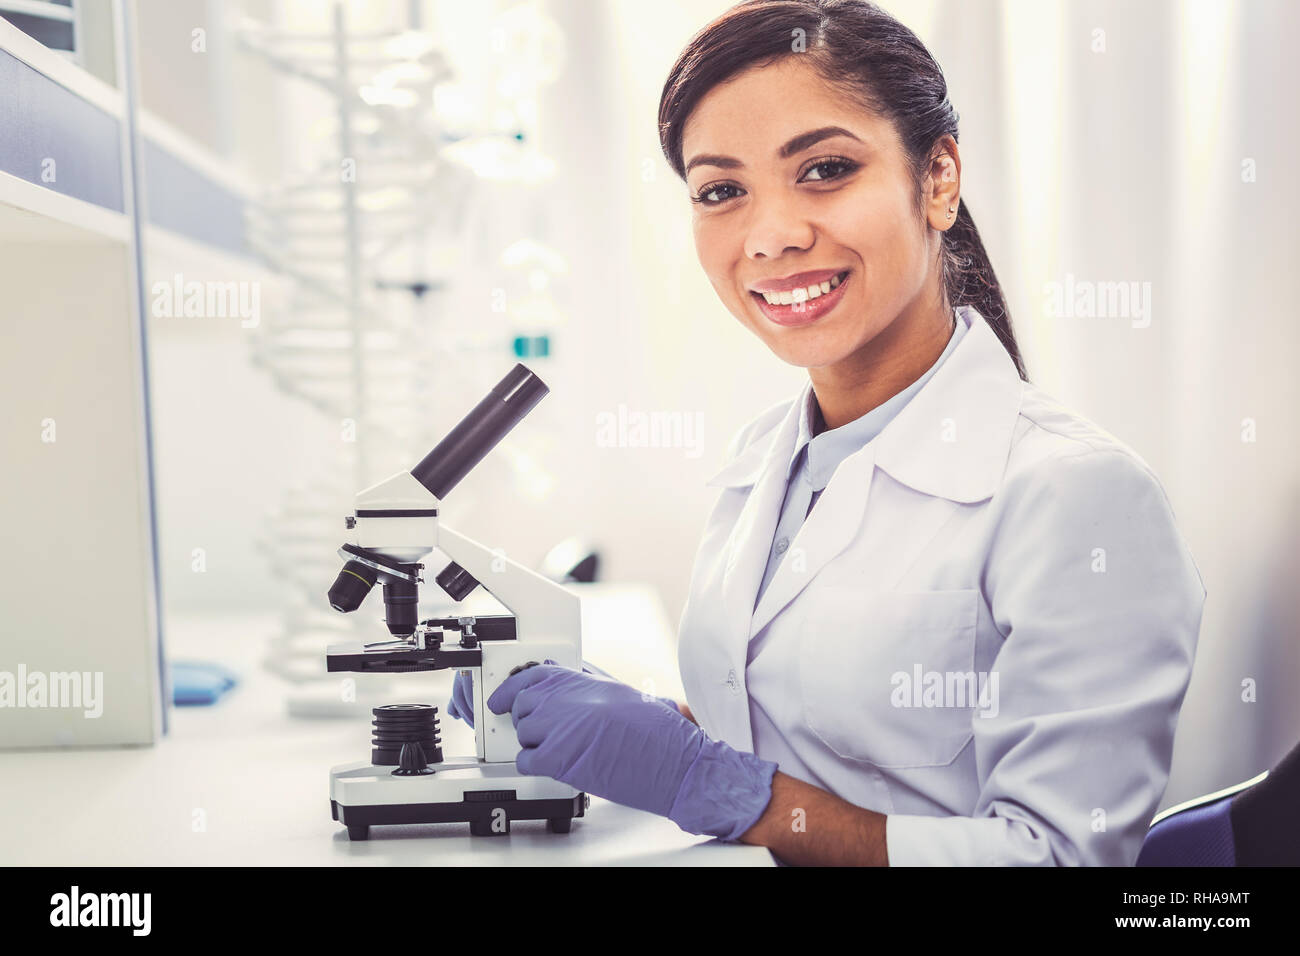 Jeune chimiste portant des uniformes blancs assis près de microscope Banque D'Images